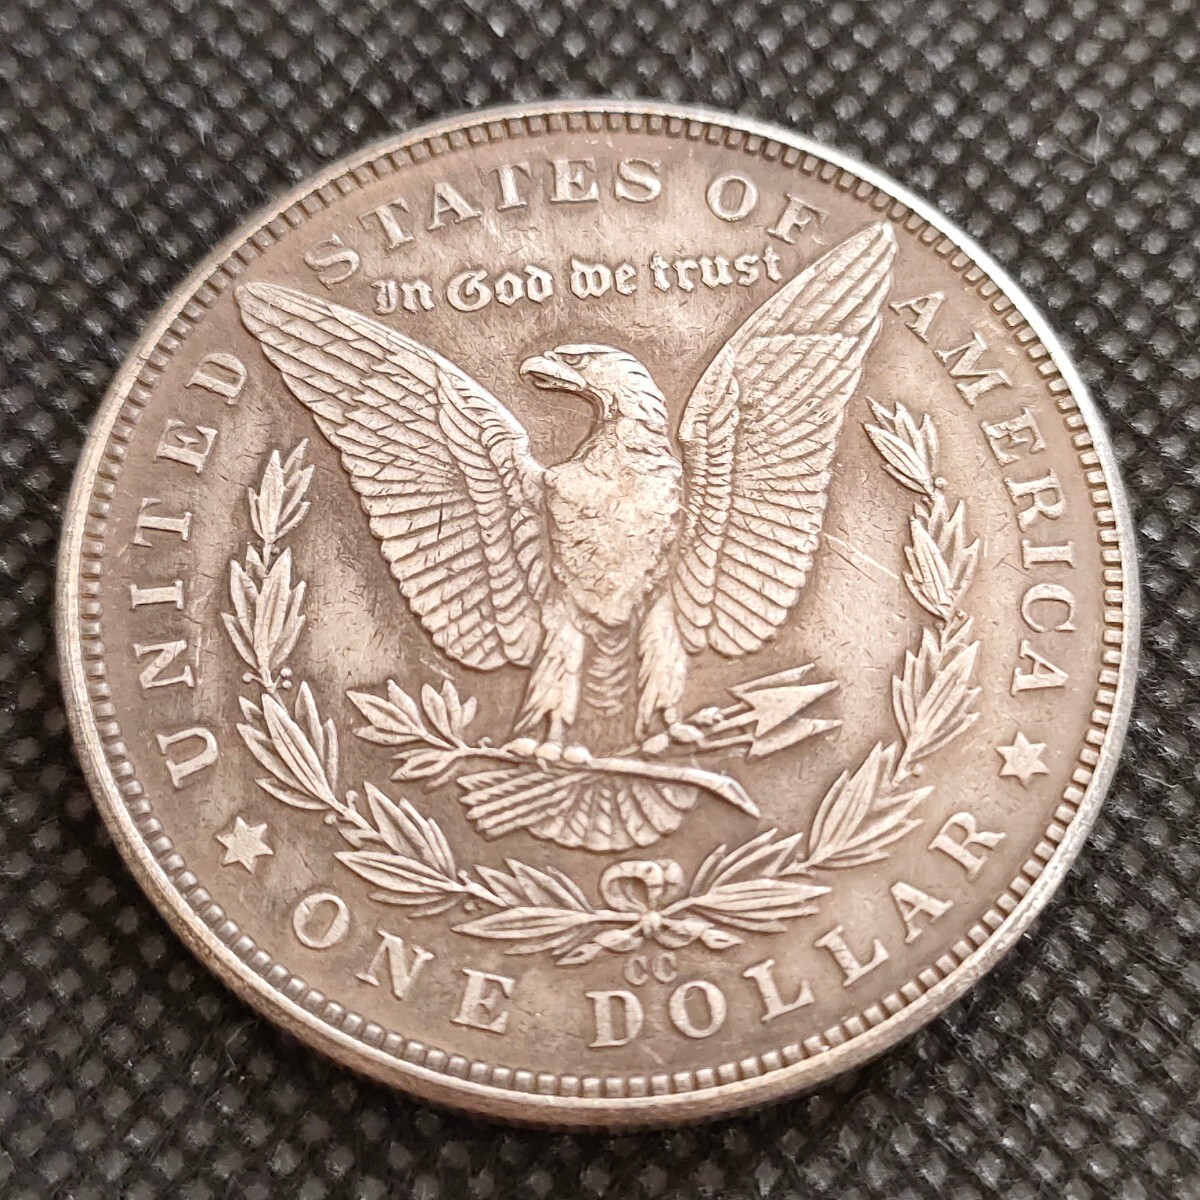 4141 アメリカ古銭 ルンペン 約38mm イーグル チャレンジコイン コイン アンティーク ホーボーの画像2